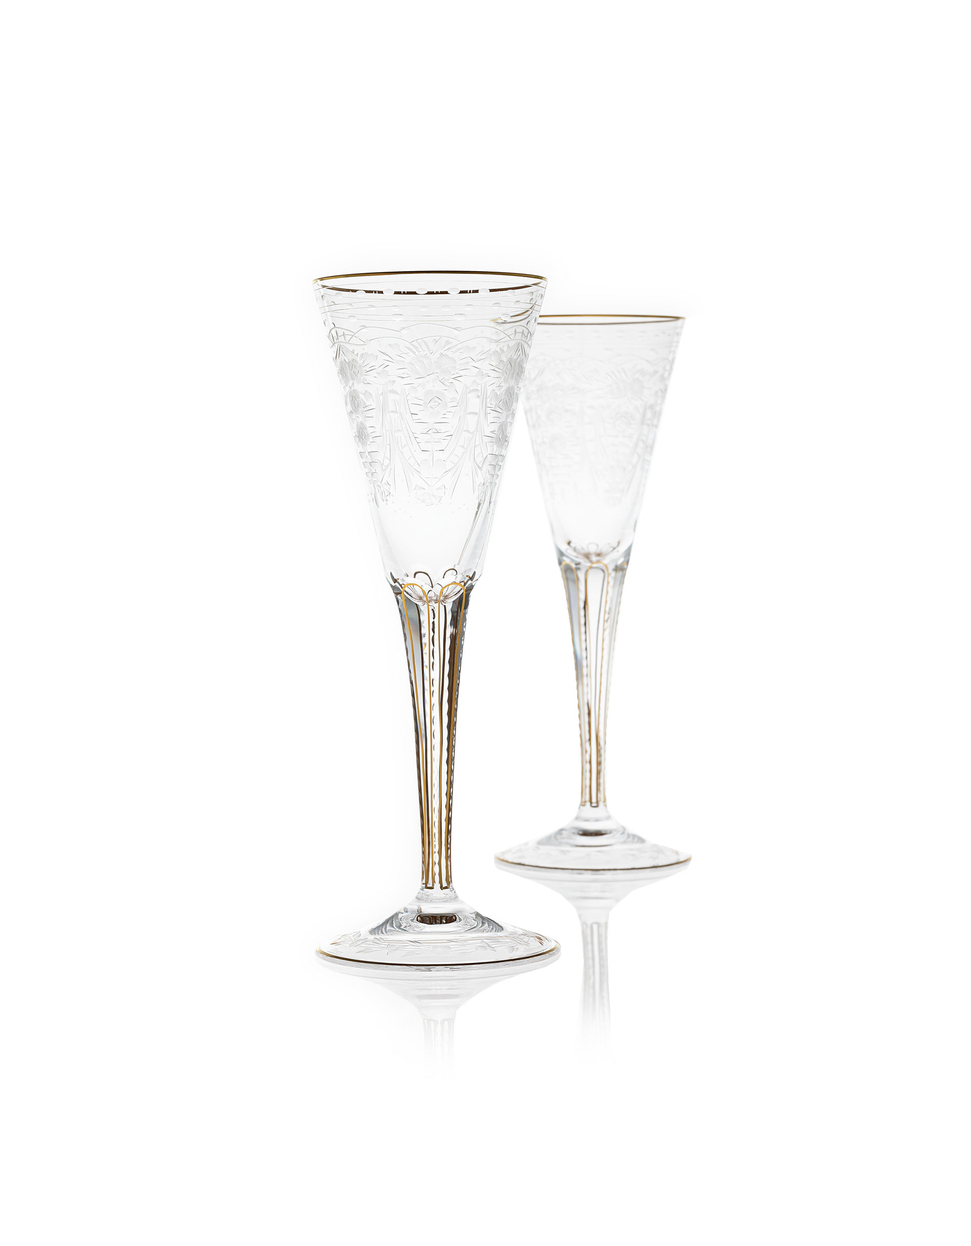 Maharani sklenka na šampaňské, 160 ml – sada 2 kusů